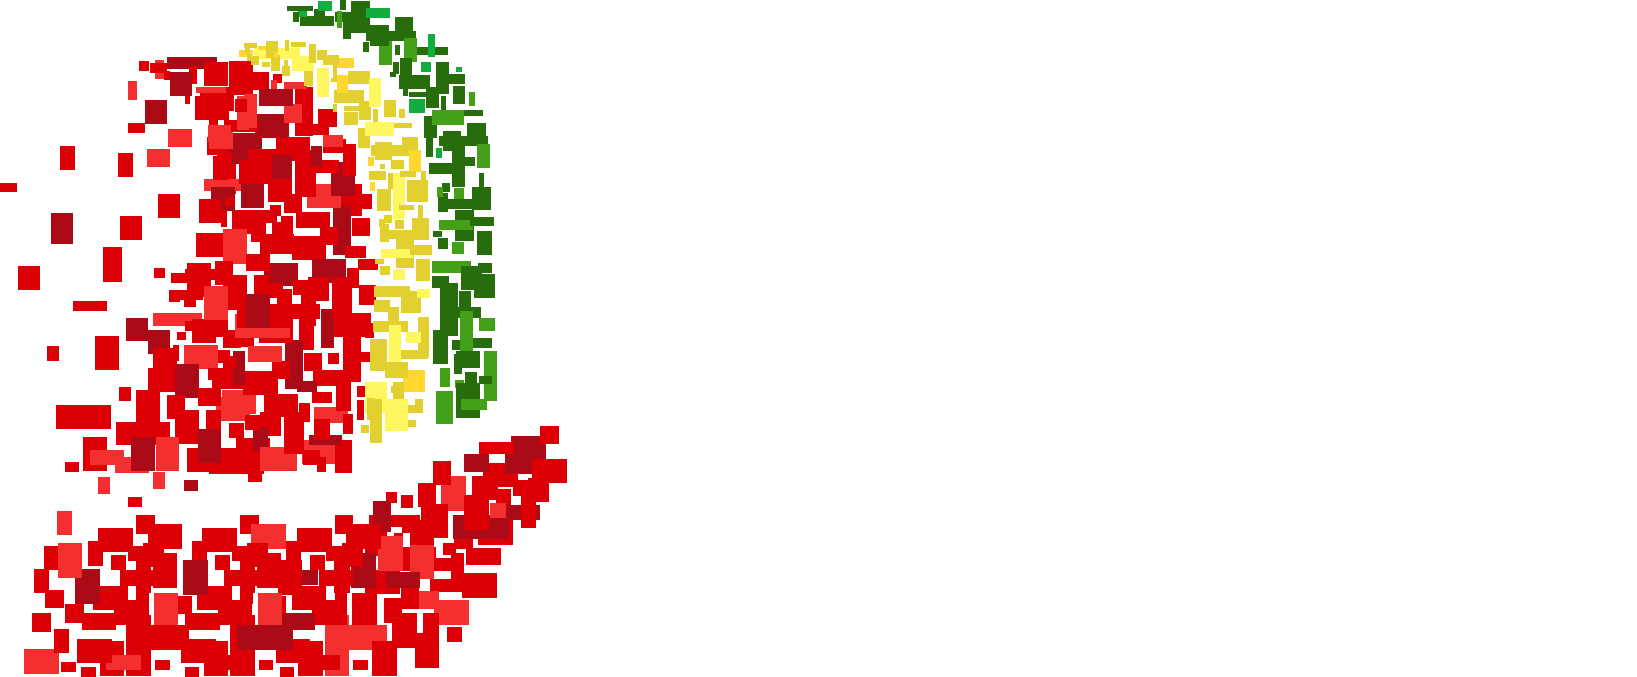 Federação Portuguesa Desportos Electrónicos